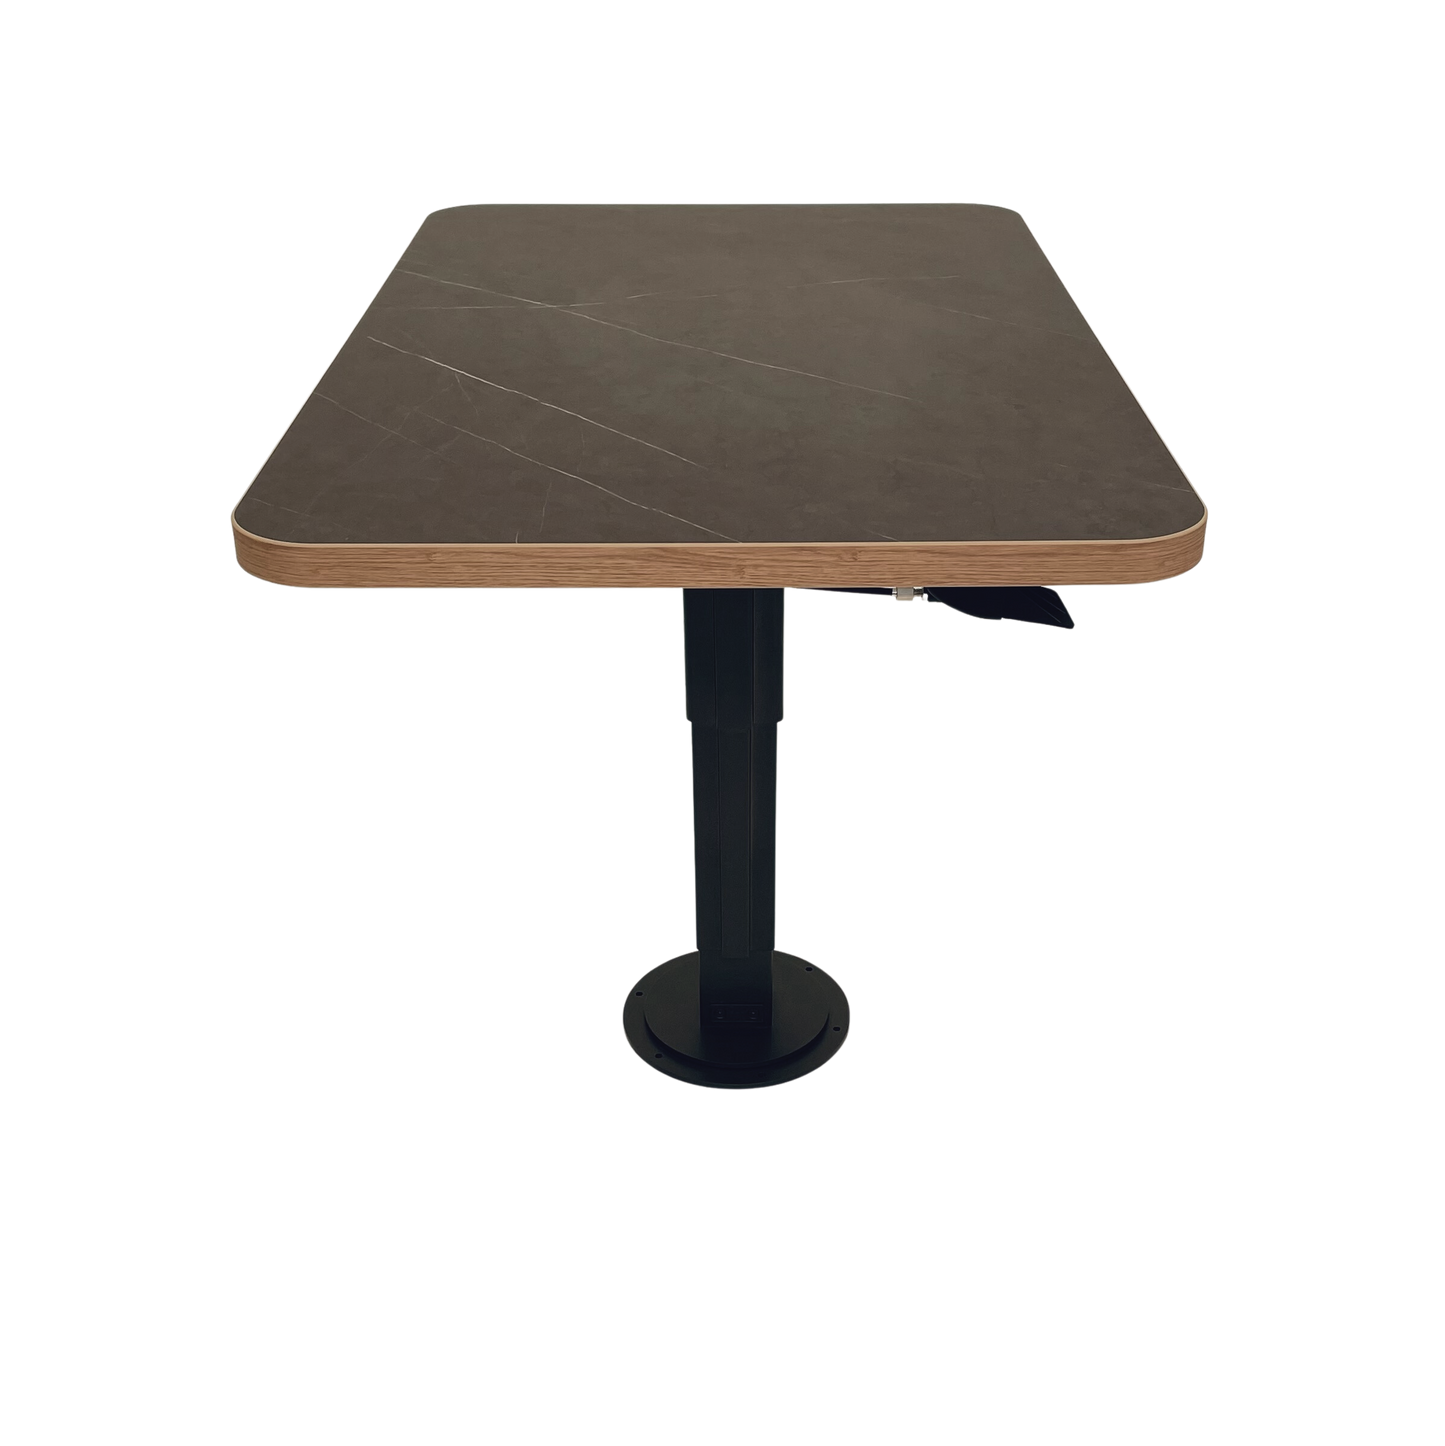 Motorhome table height adjustable